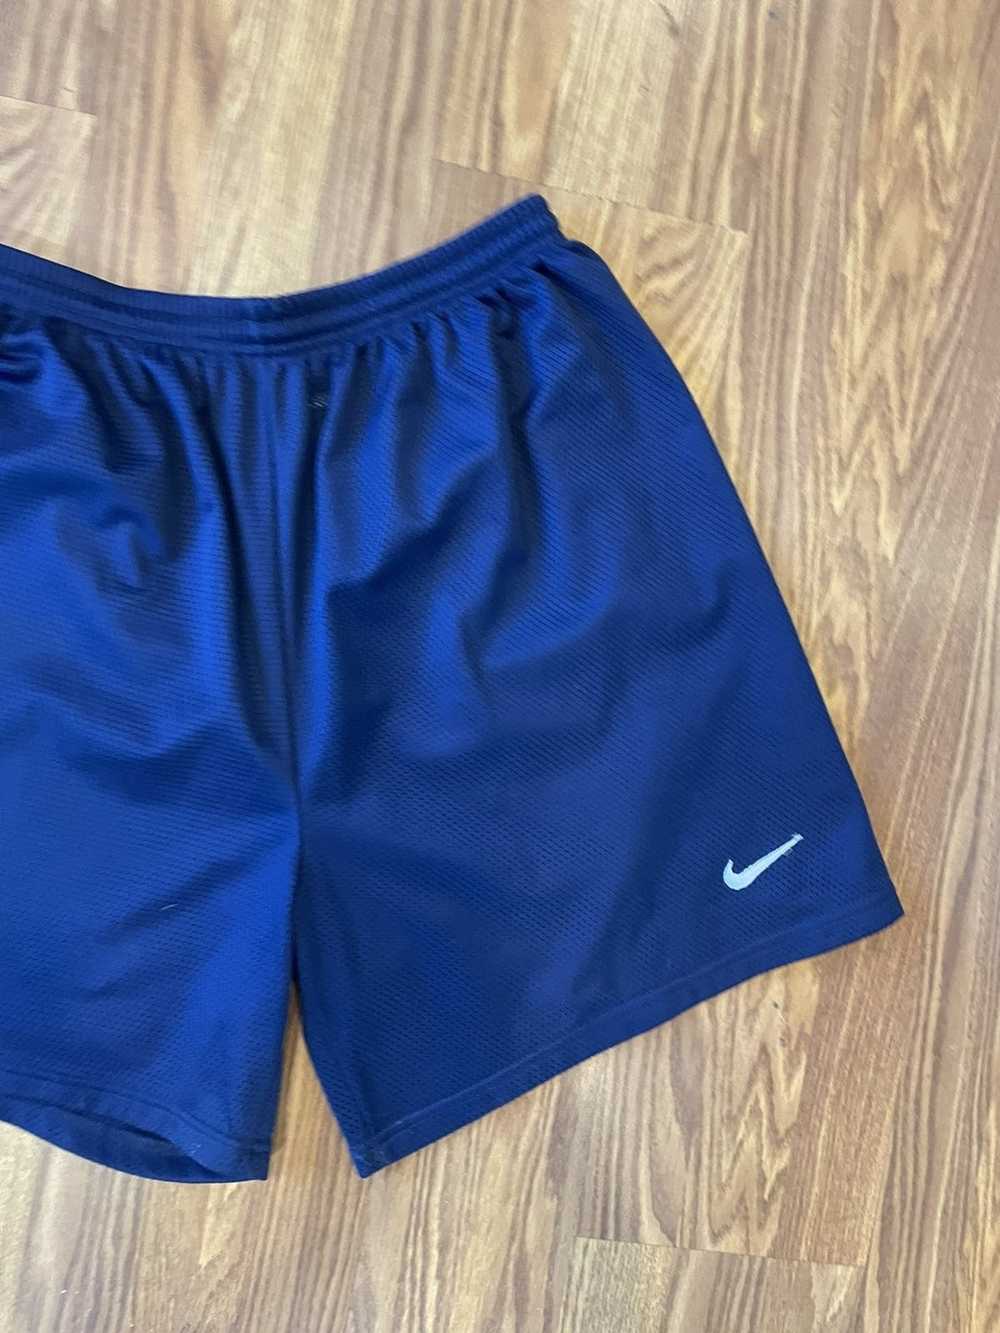 Nike Vintage 90s nike basketball shorts xl blue - image 4